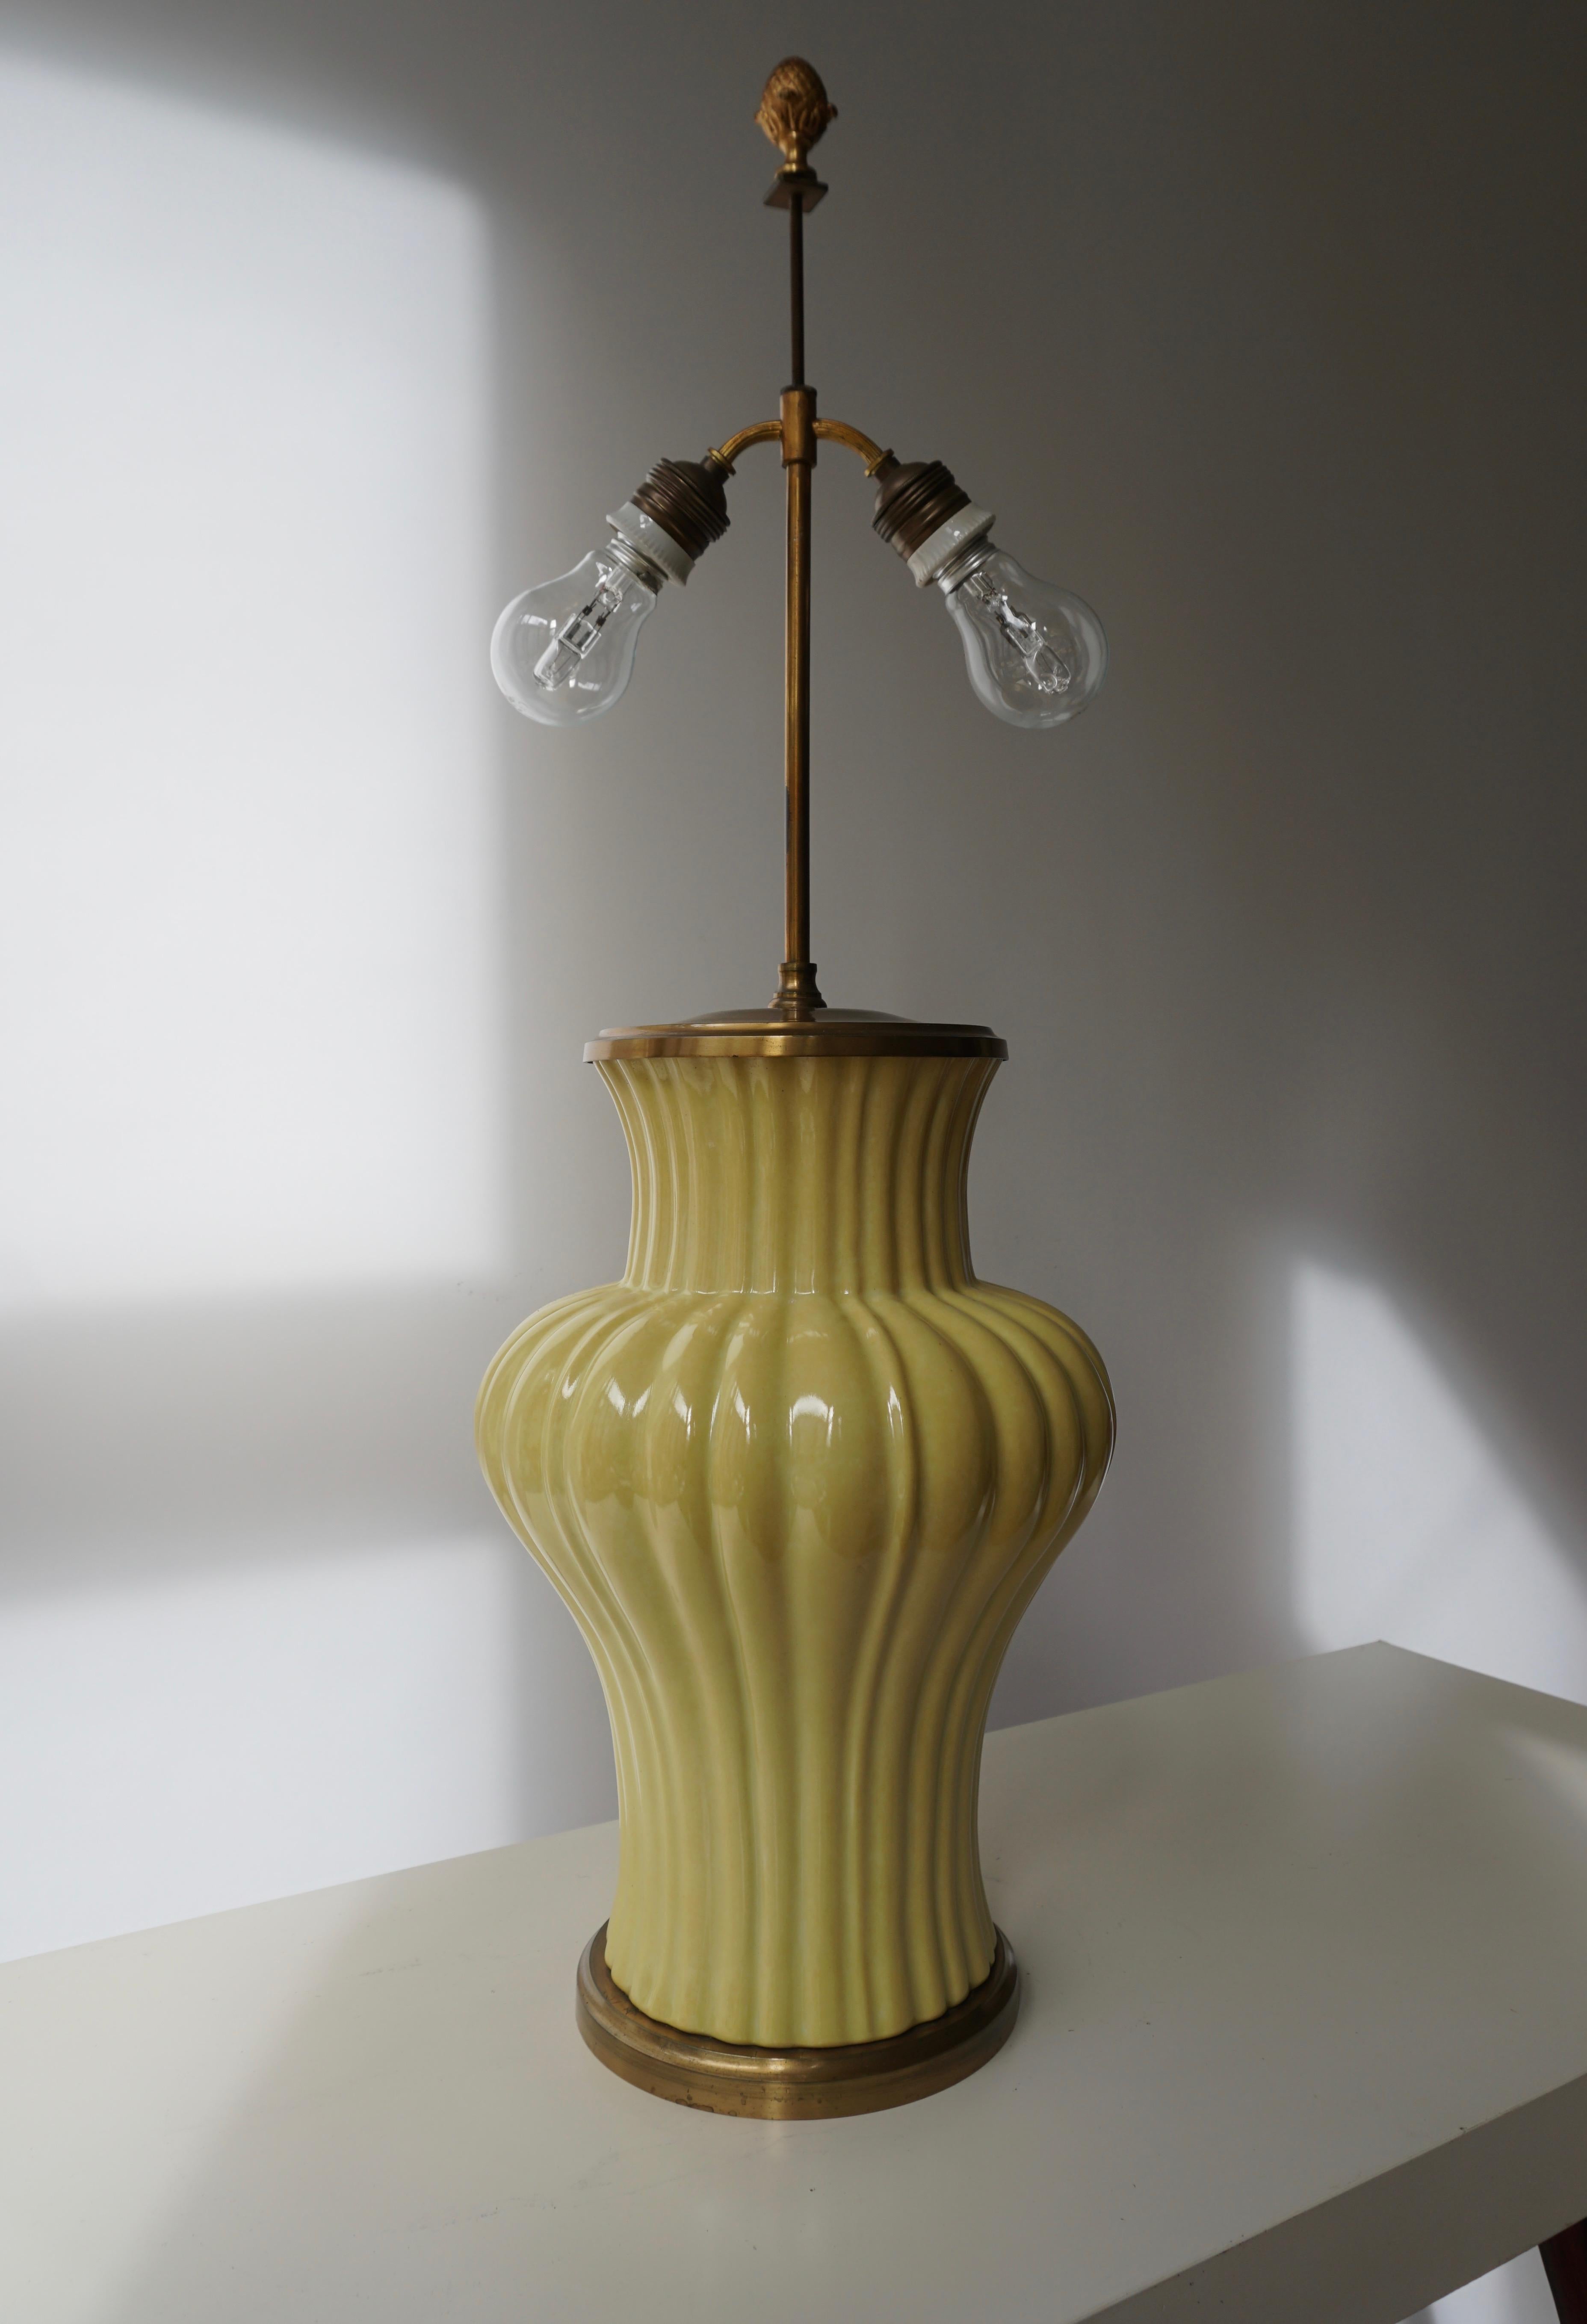 Italienische Tischlampe aus Keramik und Messing.
Maße: Höhe Sockel 37 cm.
Gesamthöhe 75 cm.
Durchmesser 24 cm.
Gewicht 5 kg.